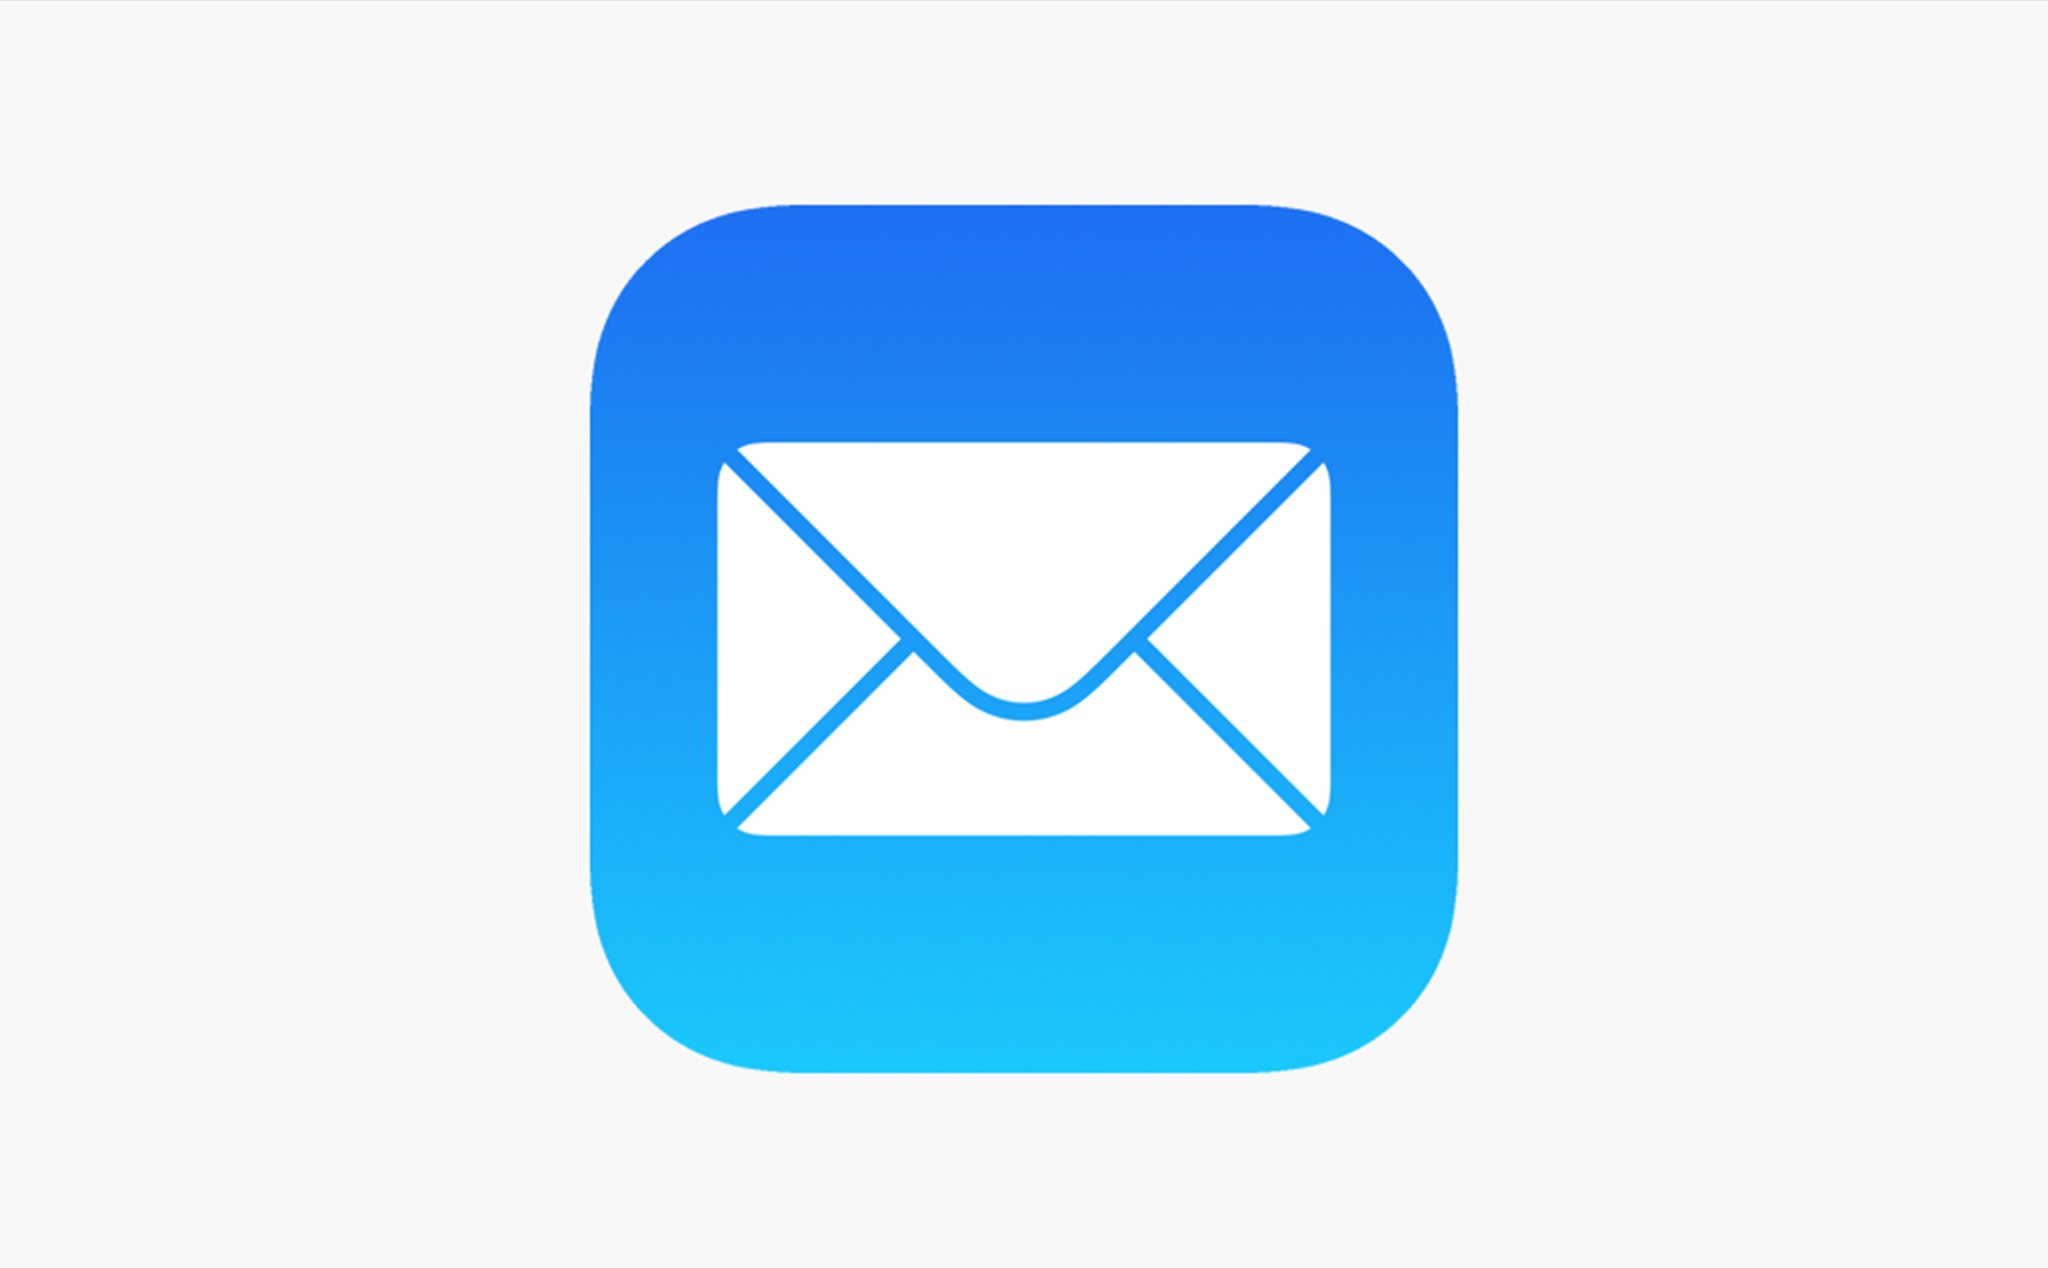 Ứng dụng Mail trên iOS đang gặp vấn đề bảo mật, cho phép hacker xâm nhập rất tinh vi